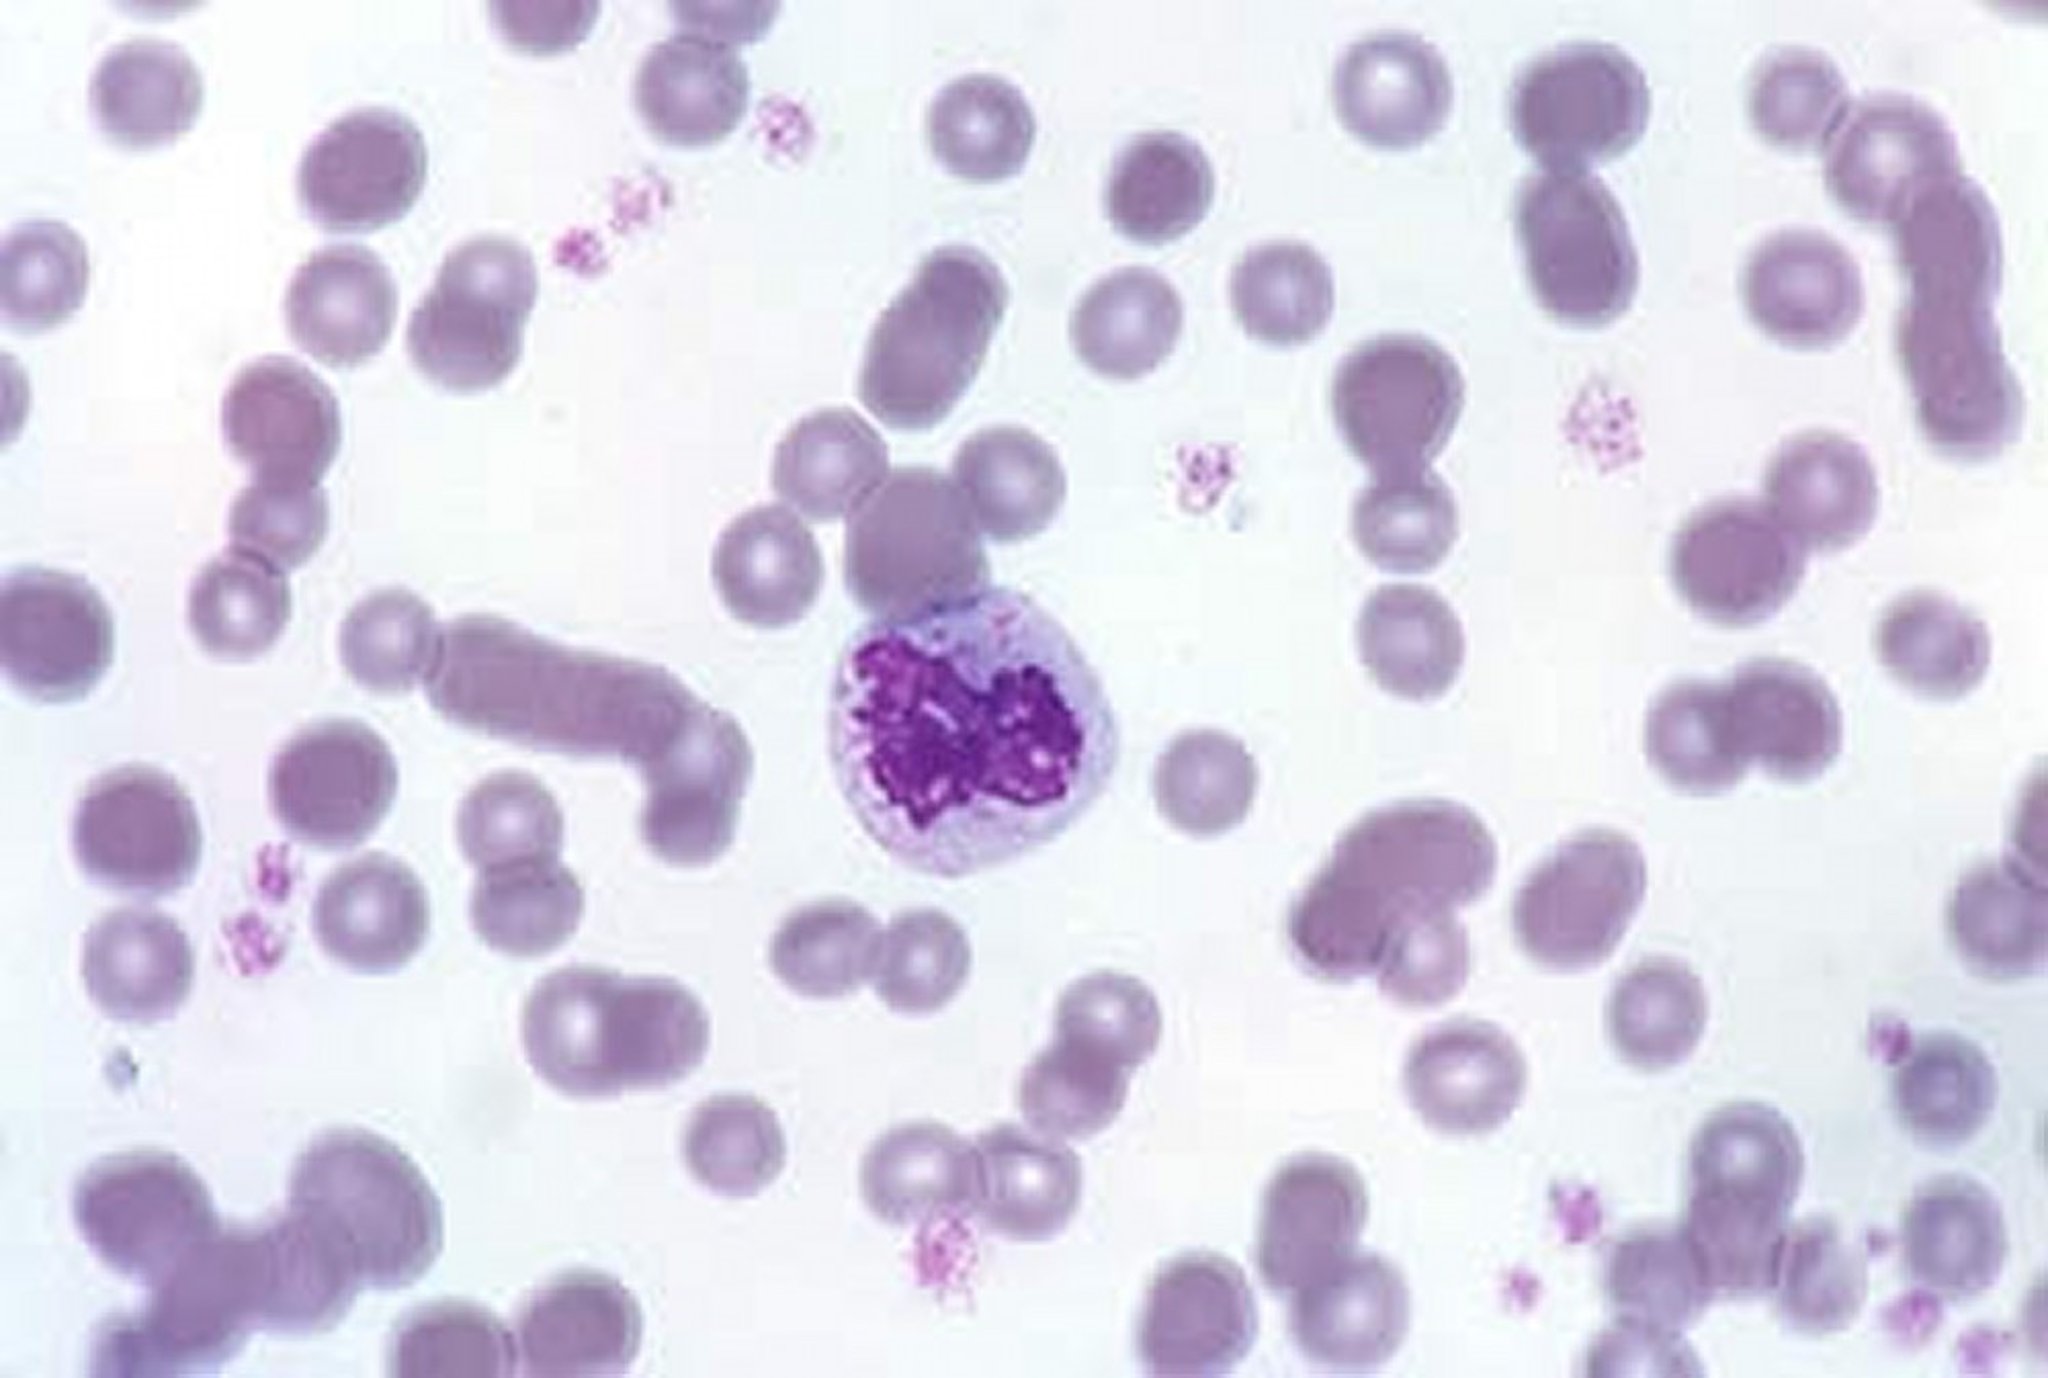 Feline blood smear, platelets